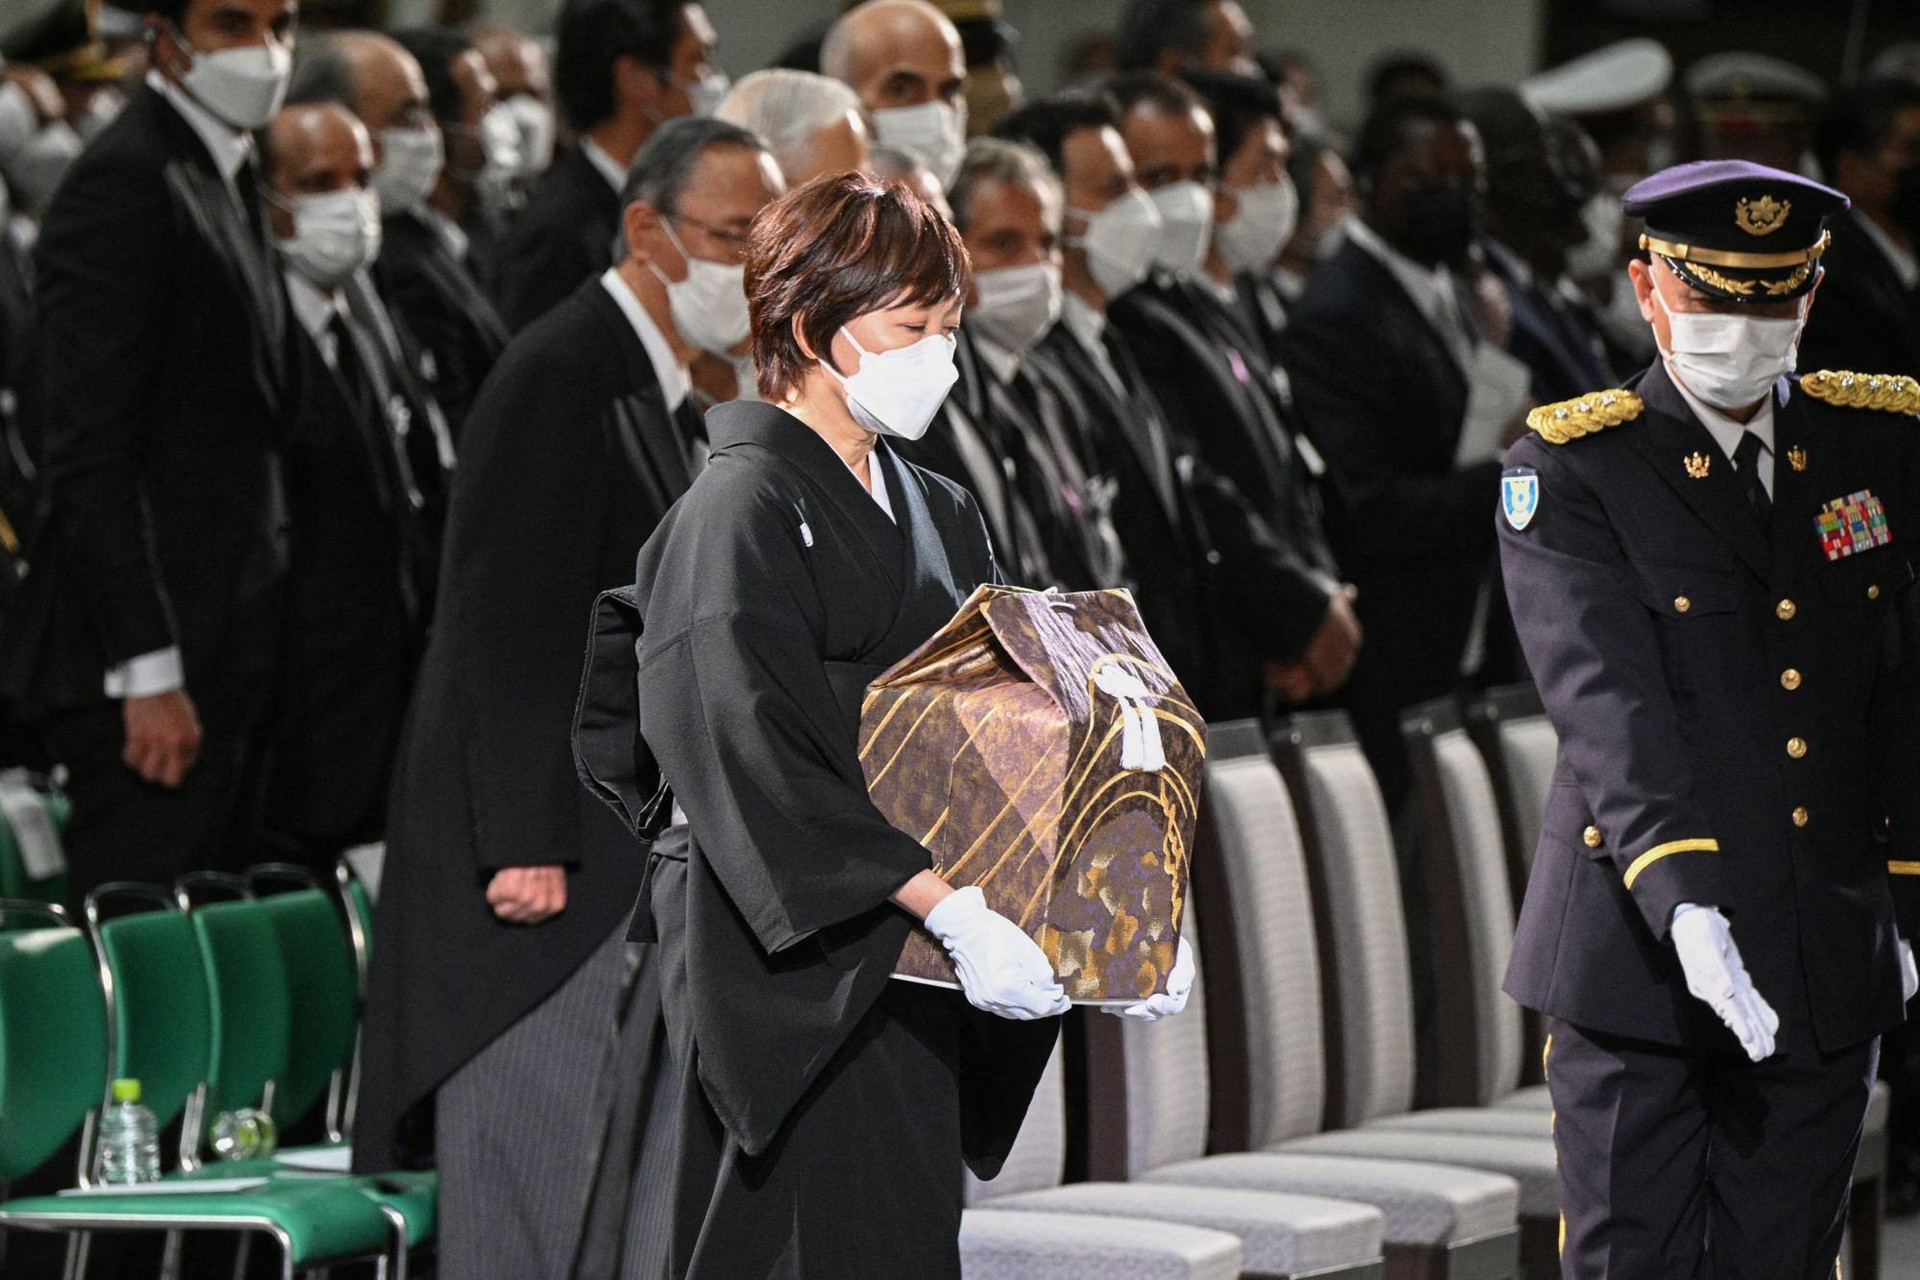 akie abe, vợ của cựu thủ tướng shinzo abe, mang theo một chiếc quách điện ảnh khi đến nhà tang lễ của chồng mình tại nippon budokan ở tokyo, nhật bản, v